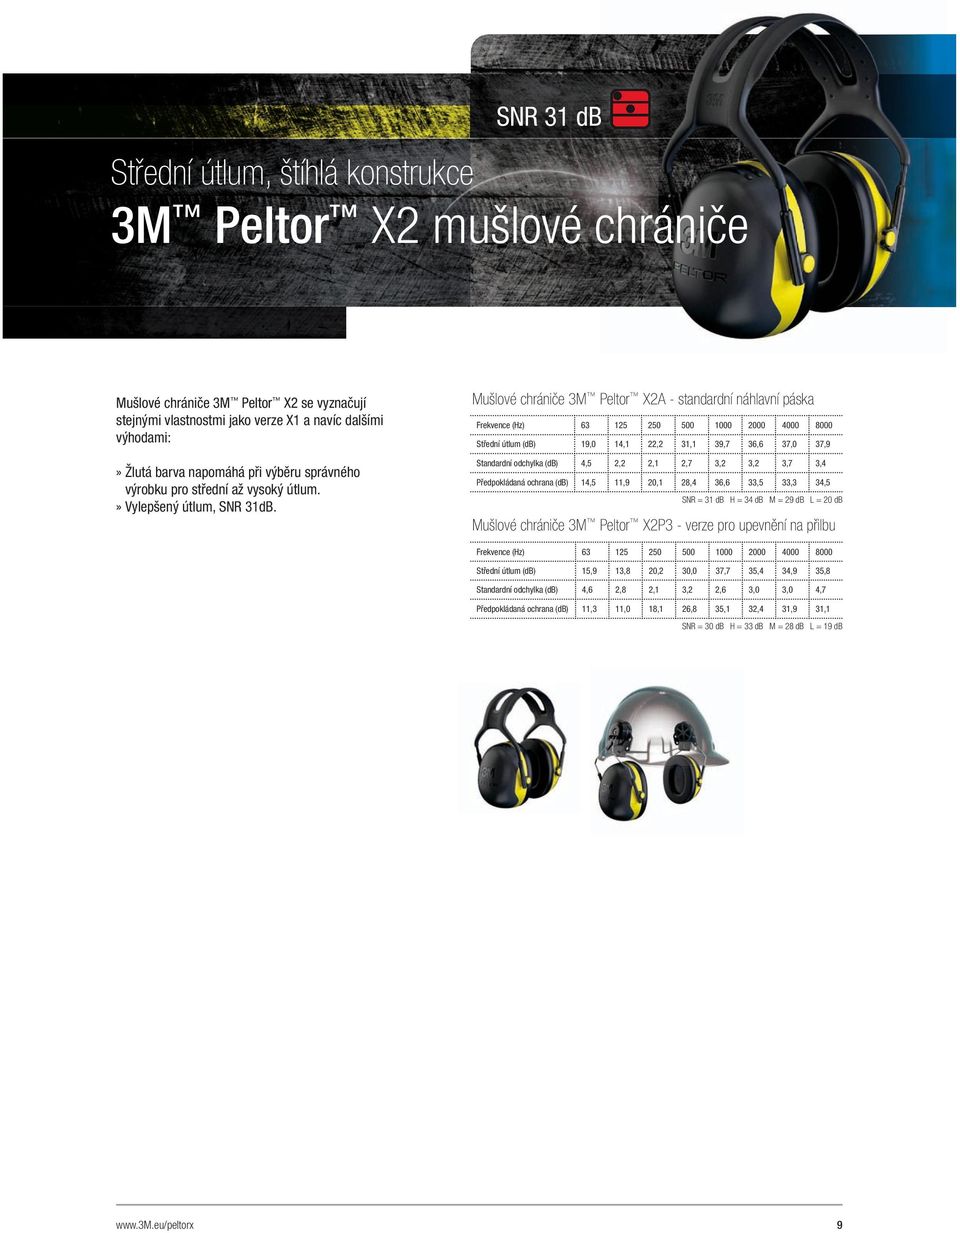 Mušlové chrániče 3M Peltor X2A - standardní náhlavní páska Střední útlum (db) 19,0 14,1 22,2 31,1 39,7 36,6 37,0 37,9 Standardní odchylka (db) 4,5 2,2 2,1 2,7 3,2 3,2 3,7 3,4 Předpokládaná ochrana